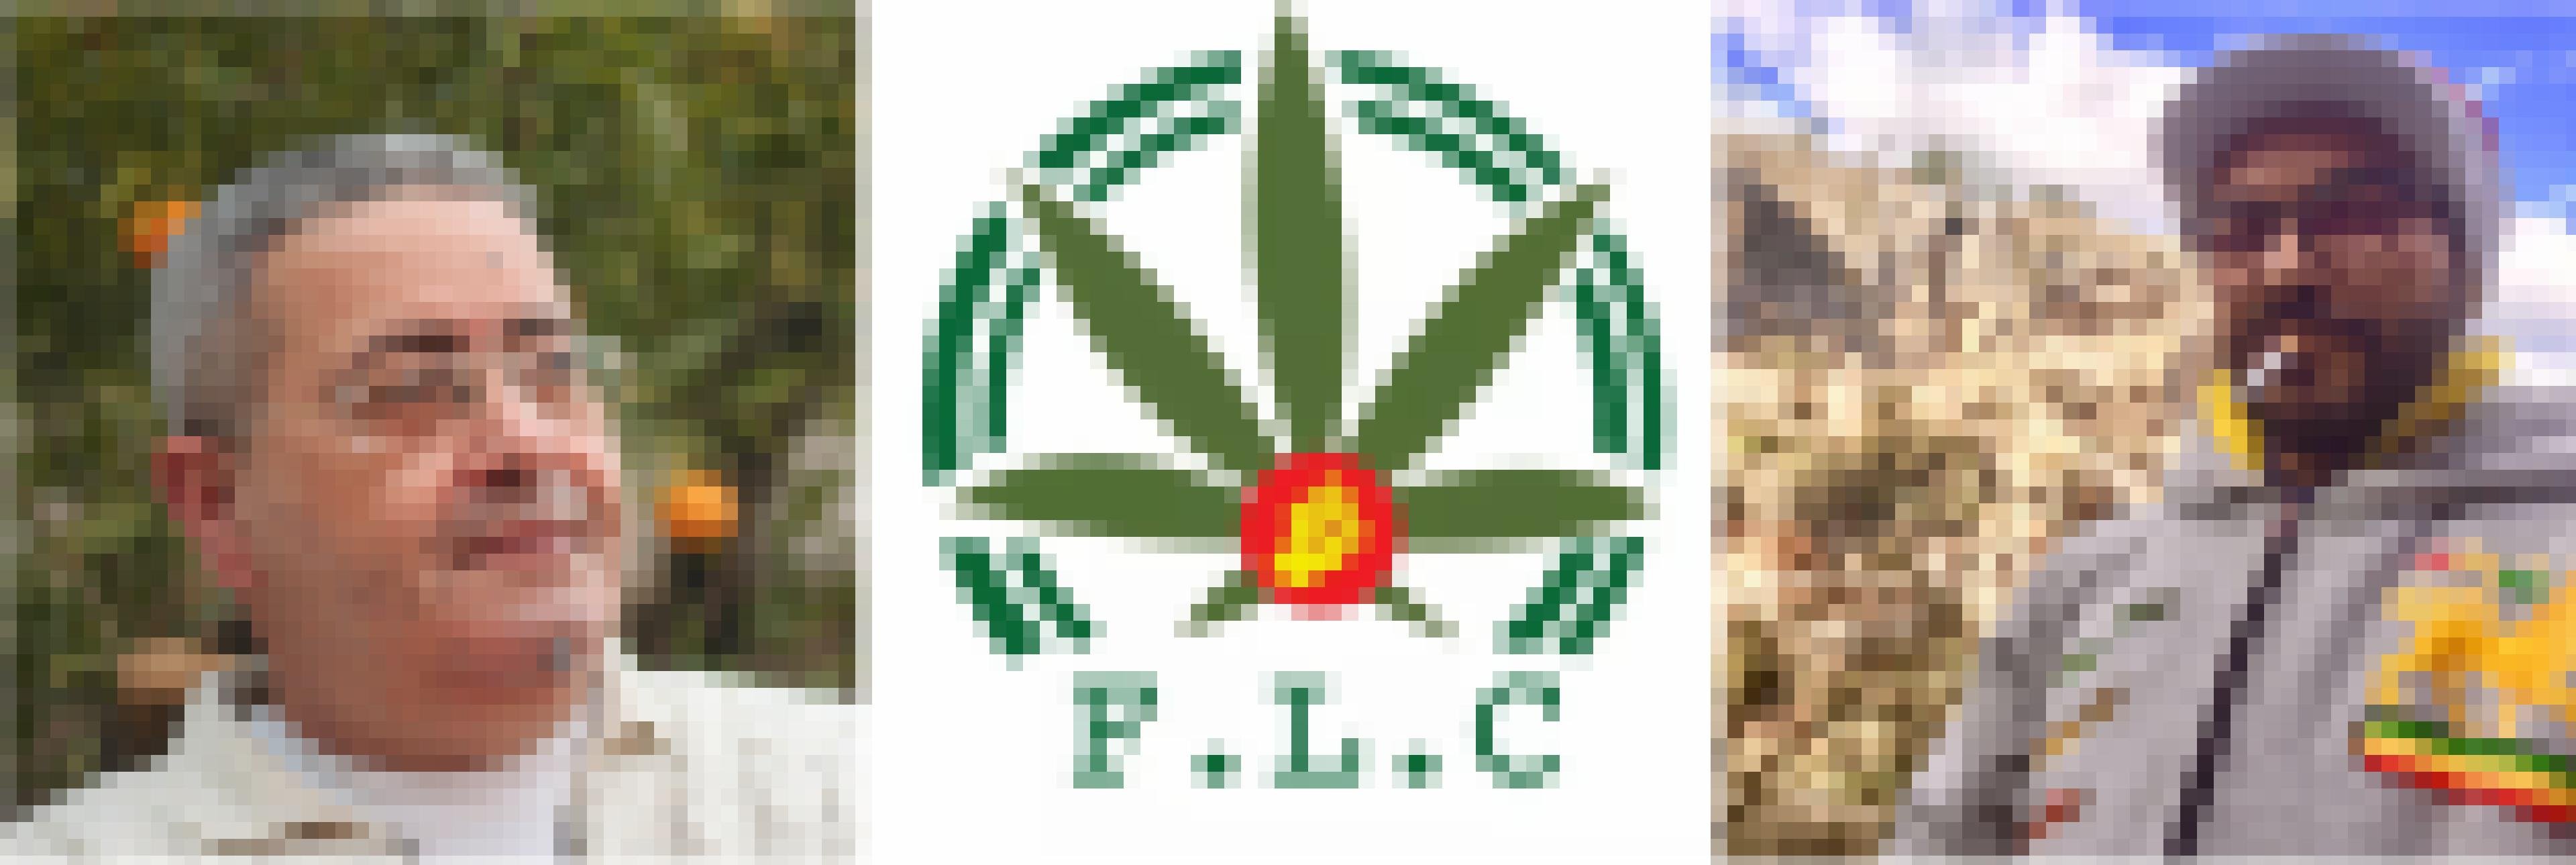 Fotos von zwei Männern und dem Logo der Front für die Legalisierung von Cannabis